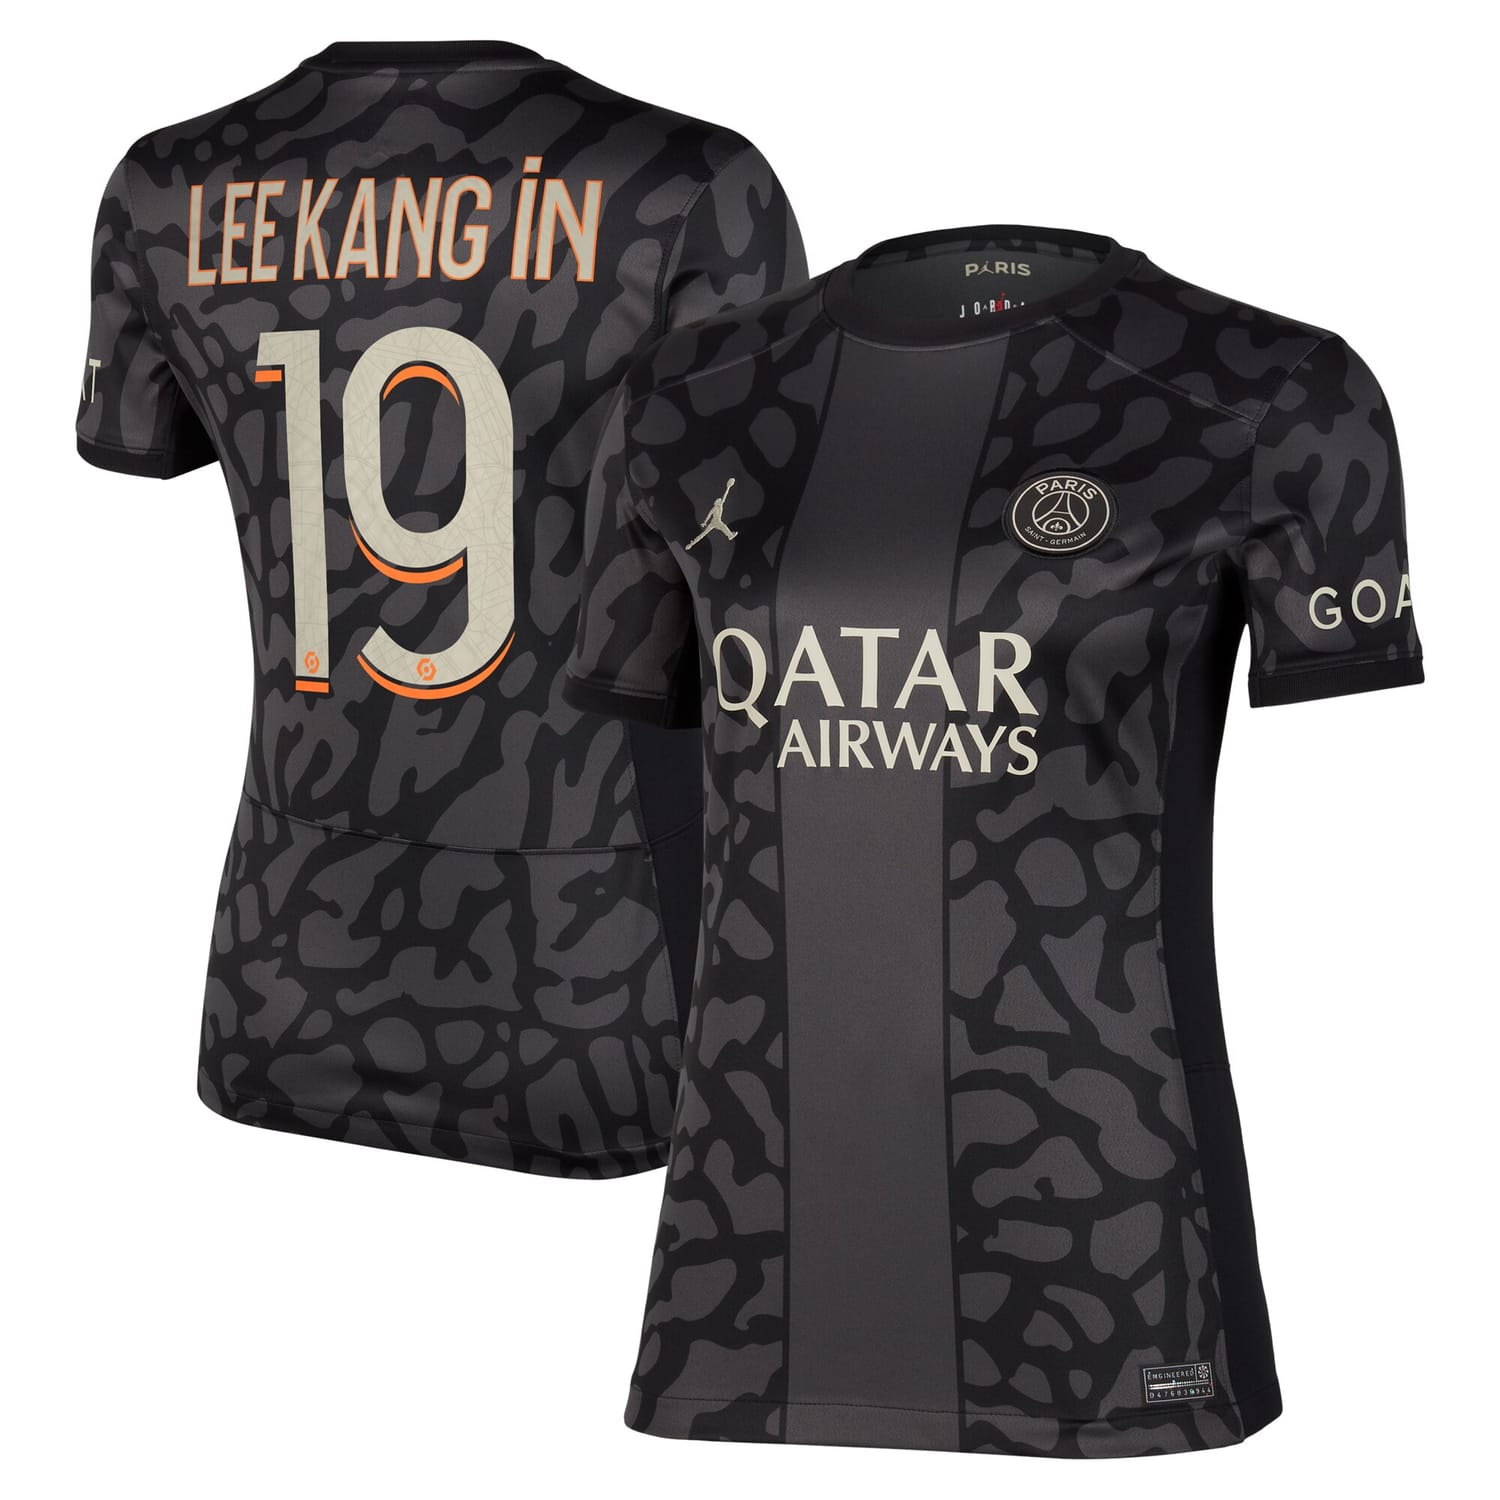 Ligue 1 Paris Saint-Germain Third Jersey Shirt 2023-24 player Lee Kang In 19 printing for Women